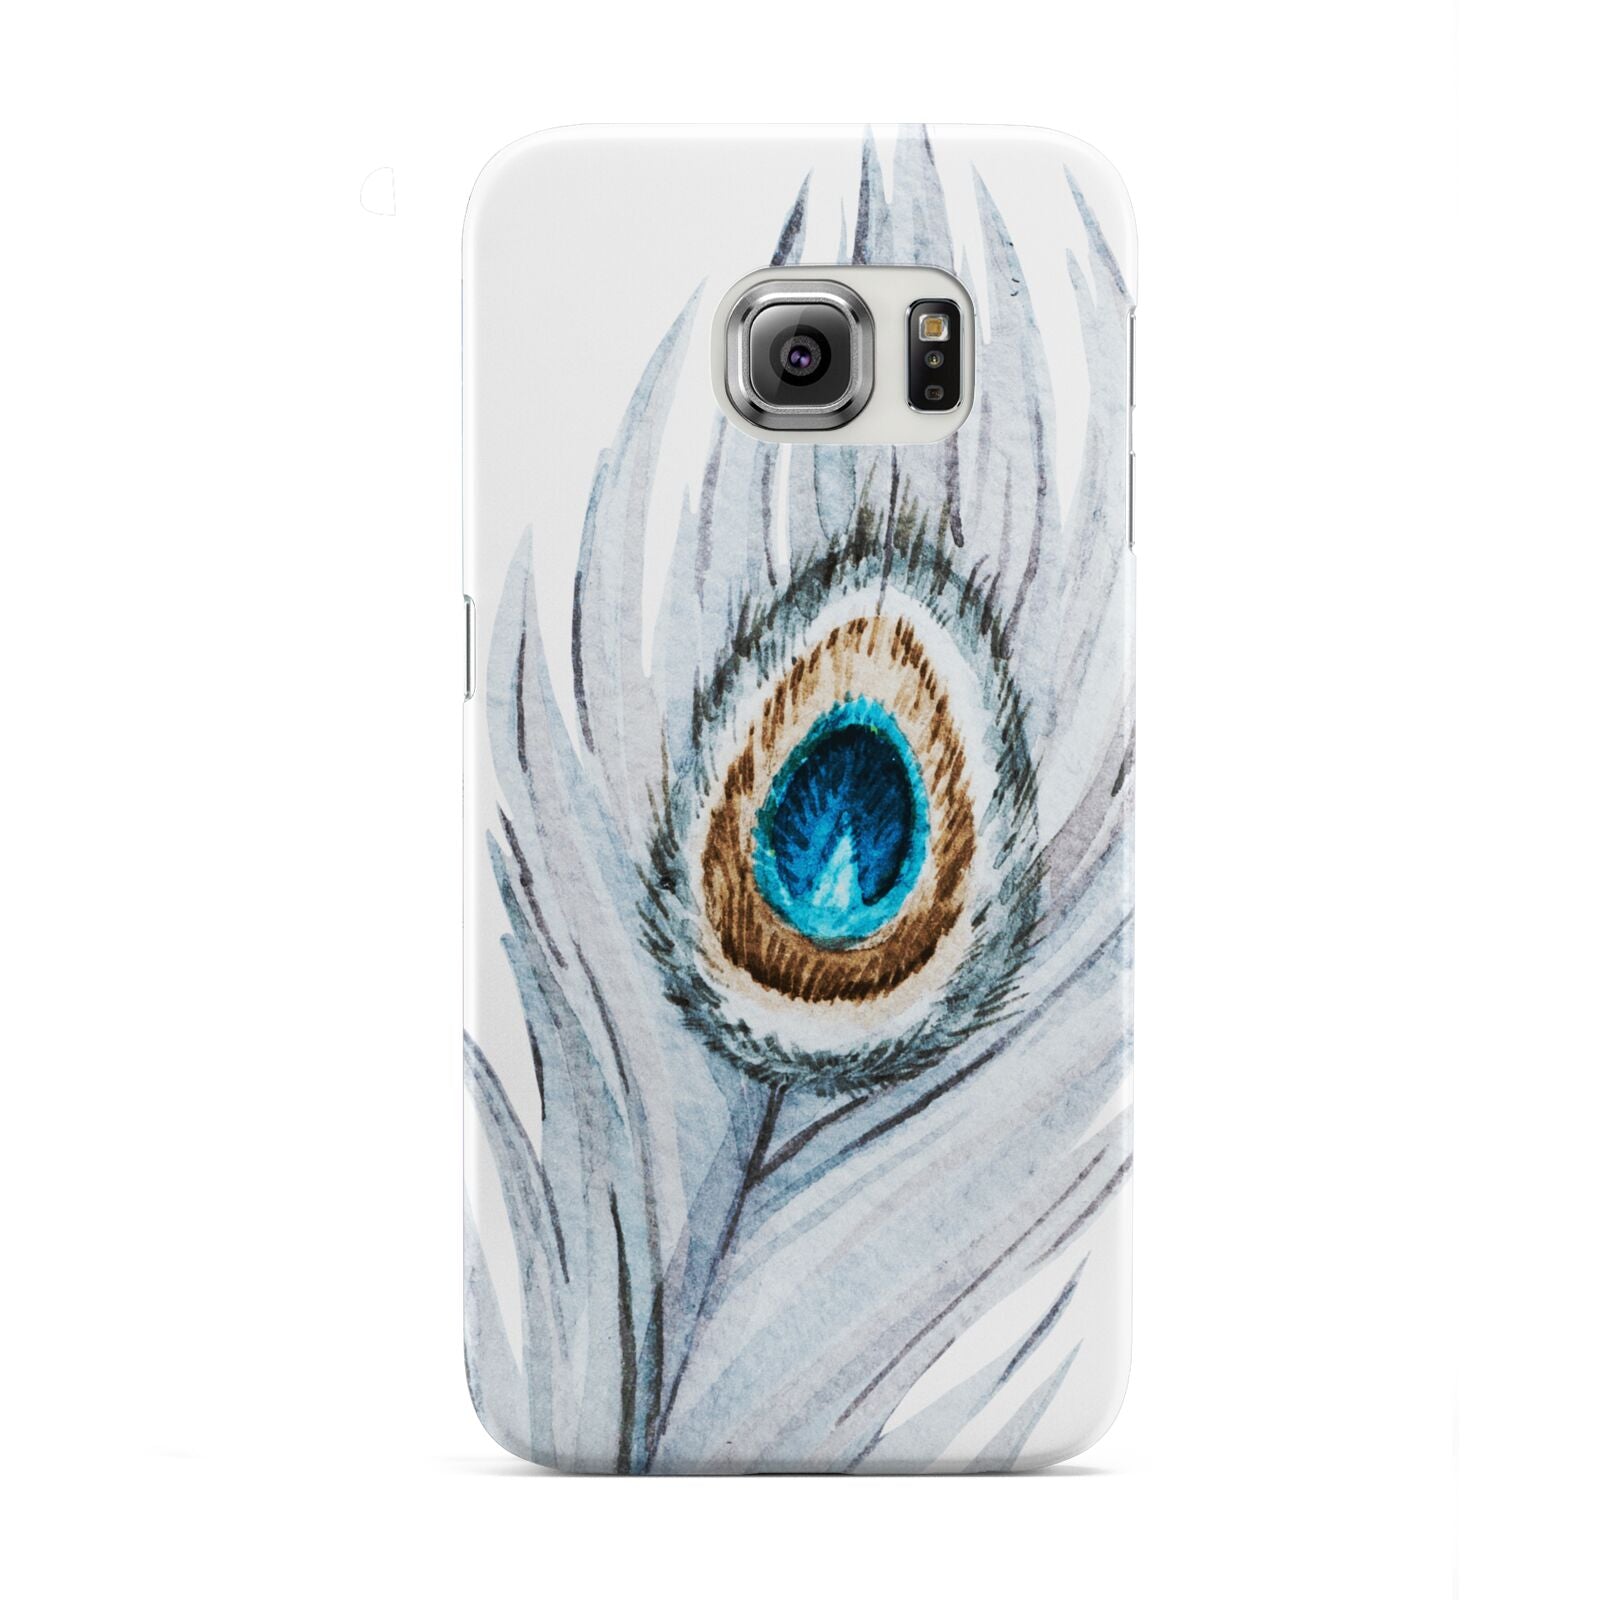 Peacock Samsung Galaxy S6 Edge Case